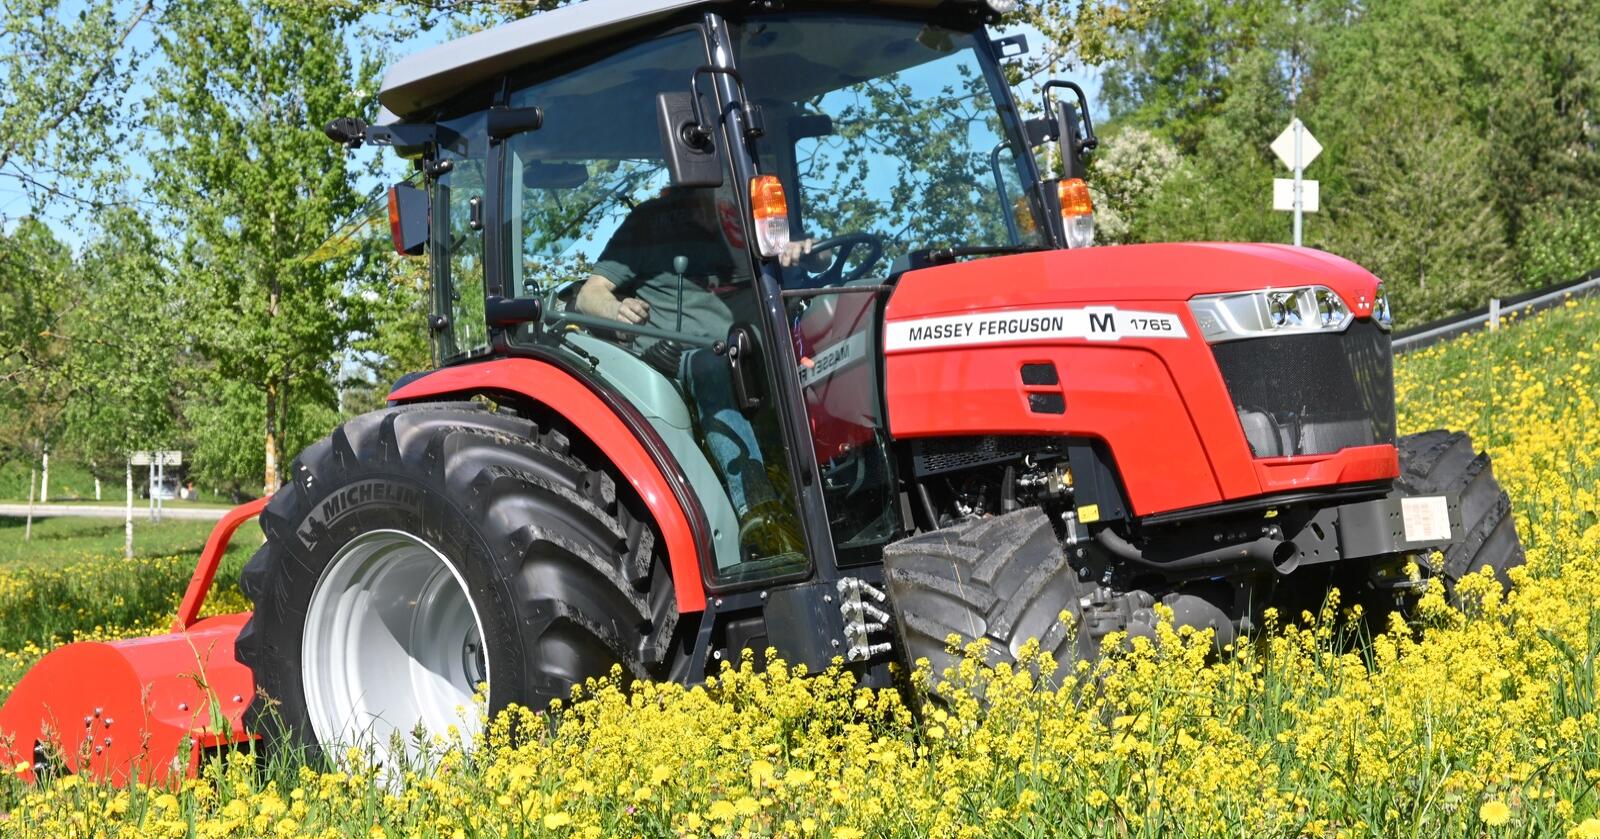 Bærekraftig: Med en vekt på bare 2 440 kilo og dekk med bredde på 600 millimeter bak og 420 millimeter foran, er dette traktoren for bæresvak mark.